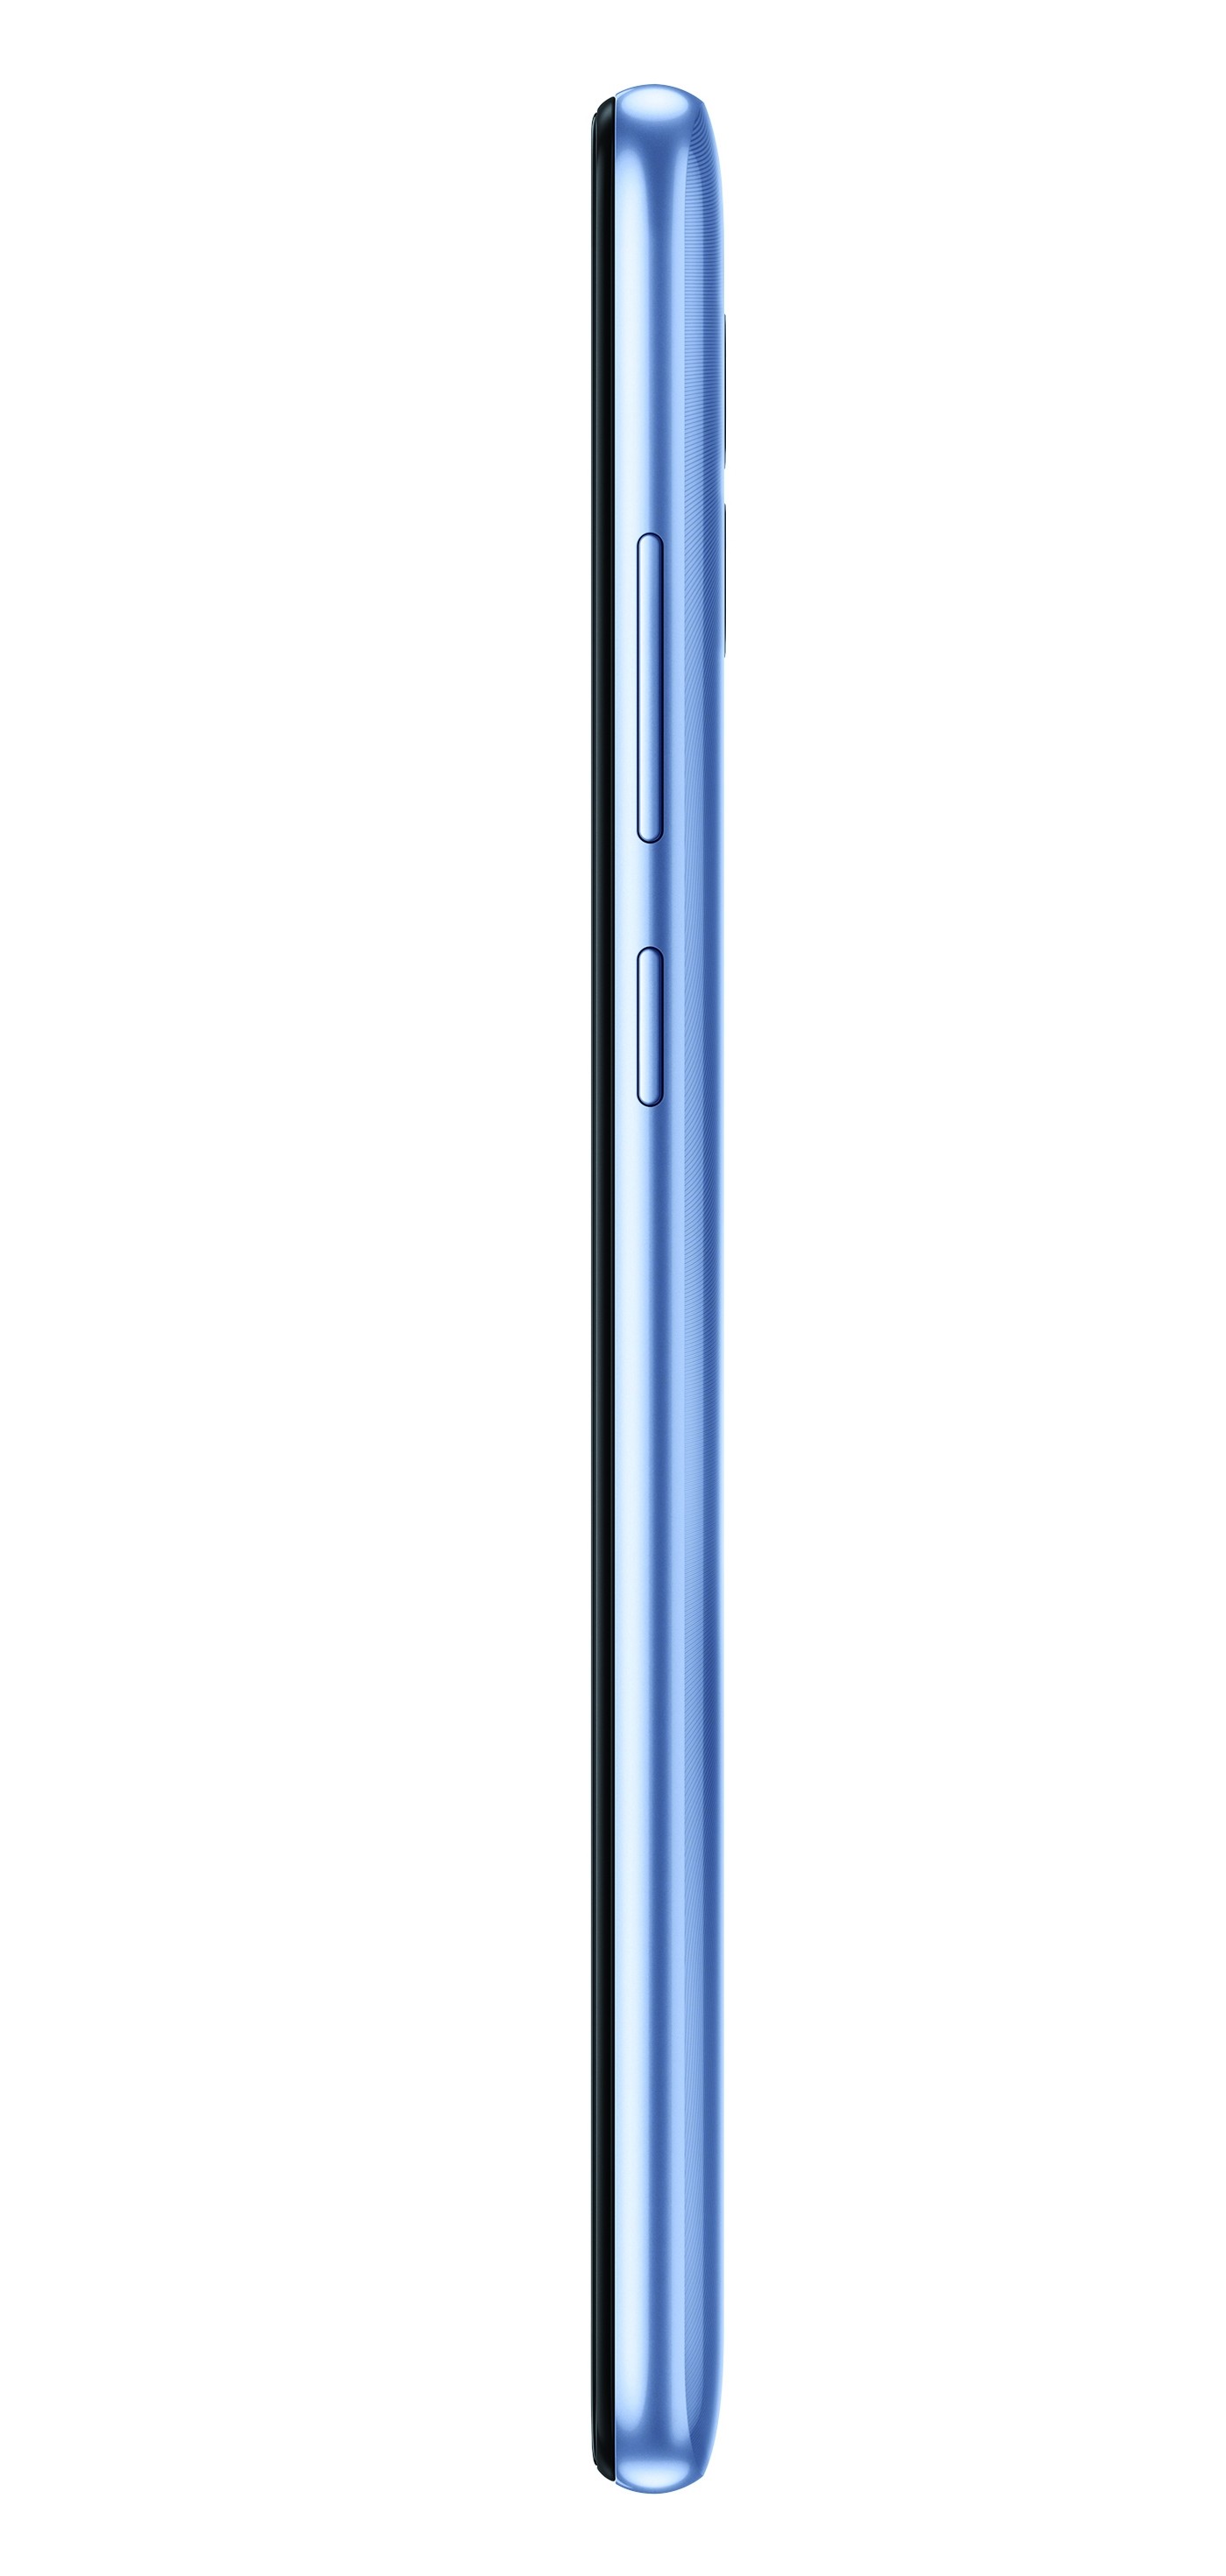 Samsung Galaxy A04e (Cell C) 